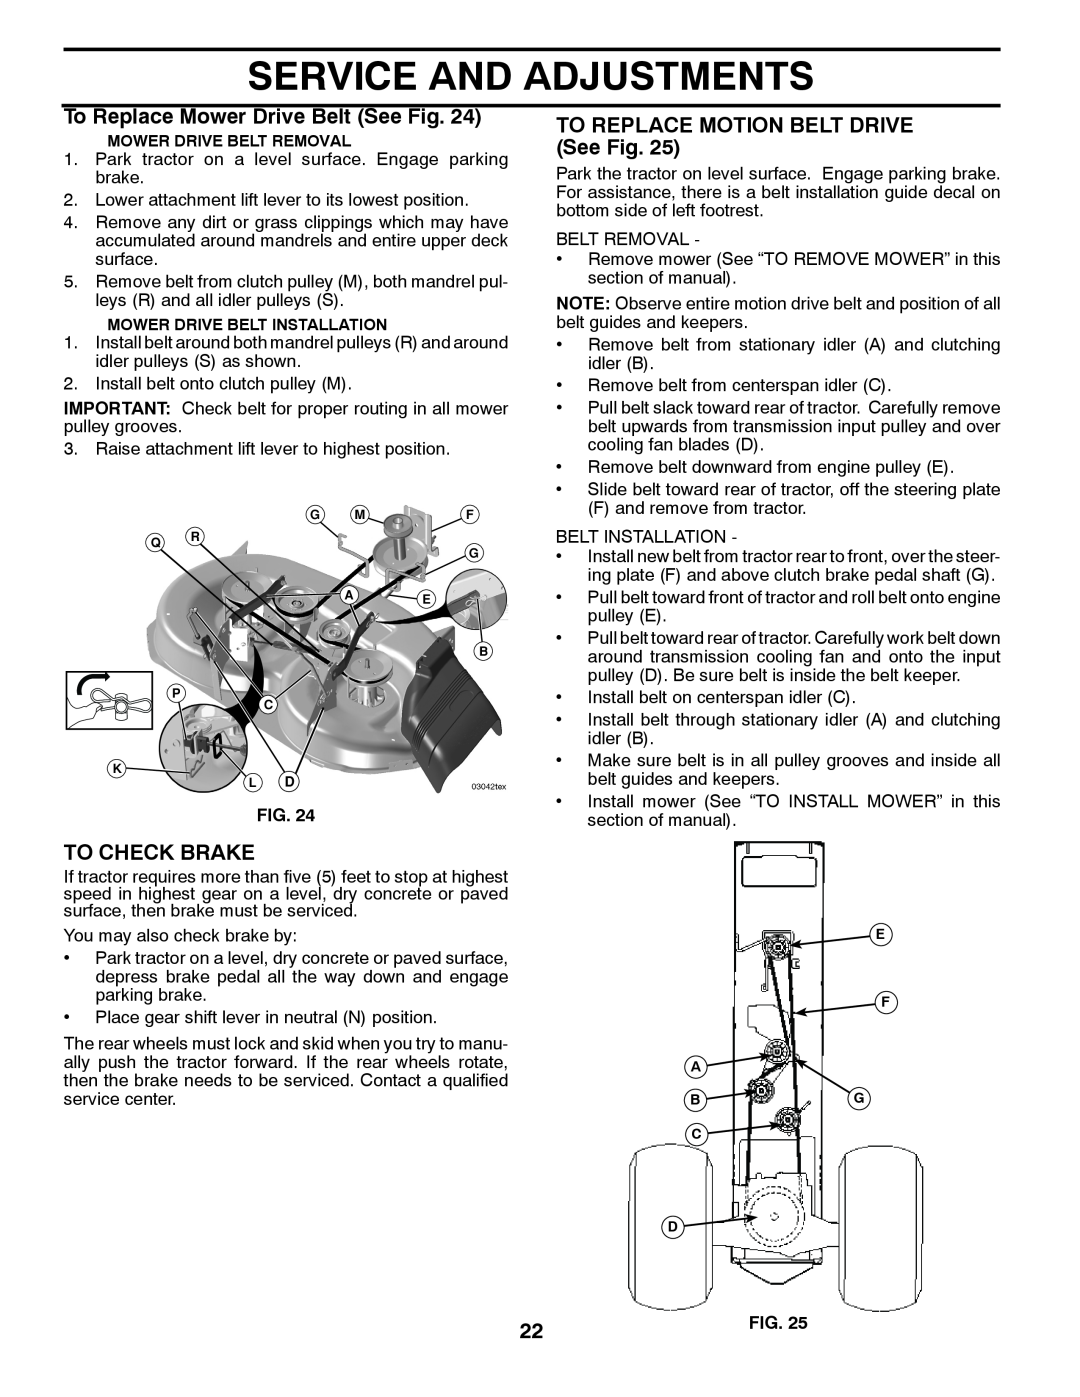 Poulan pb19546lt manual To Replace Mower Drive Belt See Fig, TO REPLACE MOTION BELT DRIVE See Fig, To Check Brake 